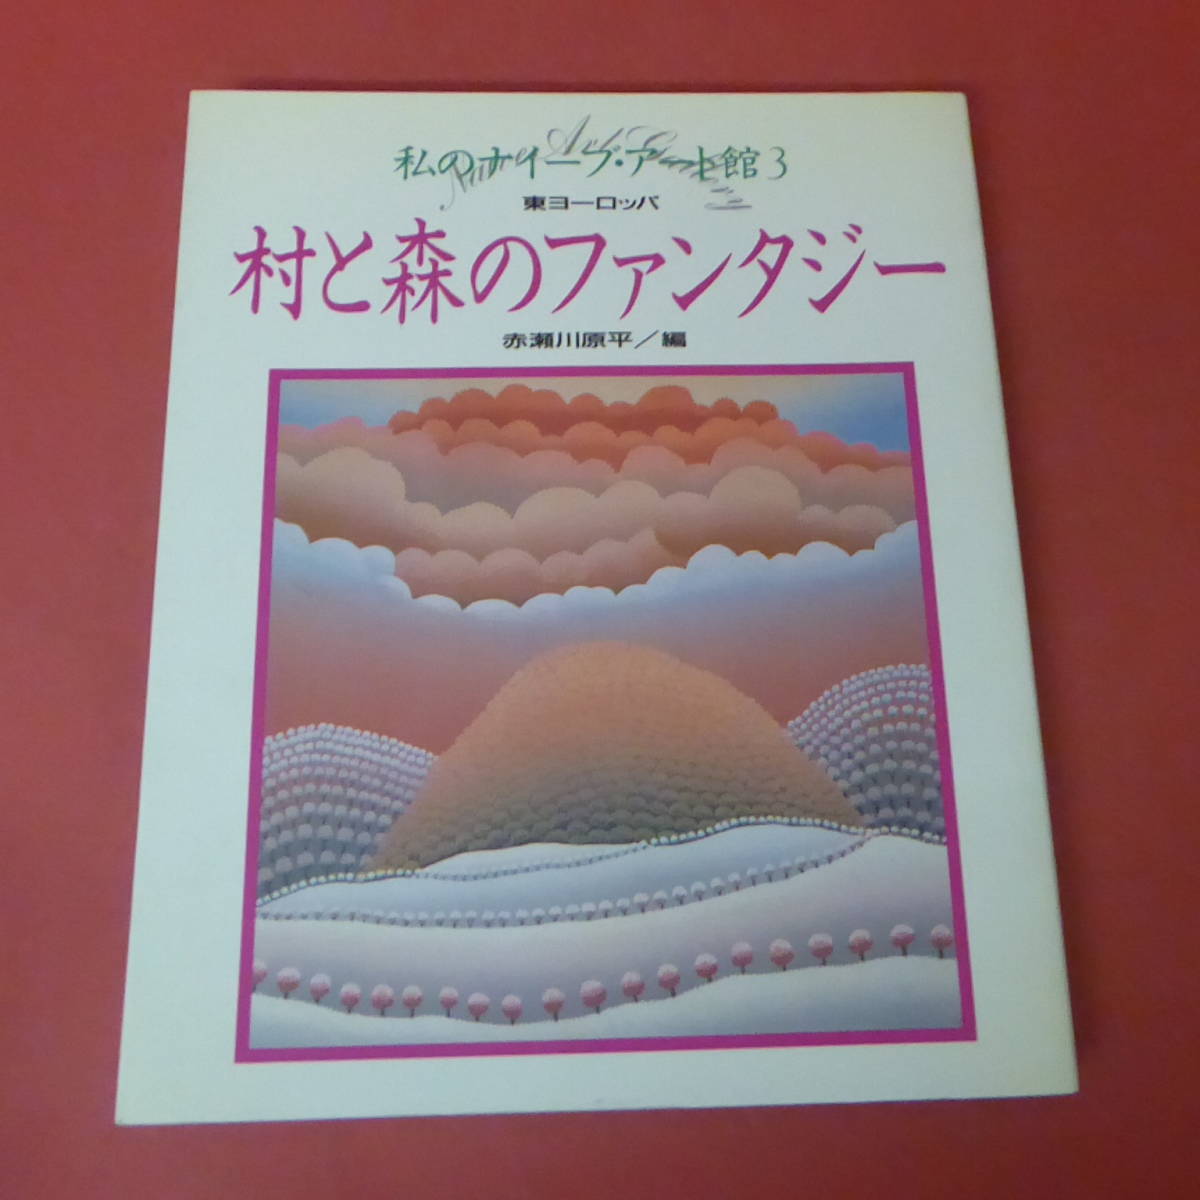 YN2-231208 ☆ My Naive Art Museum 3 Pueblo y bosque Fantasía Europa del Este Akasegawa Genpei/Editor, Cuadro, Libro de arte, Recopilación, Catalogar